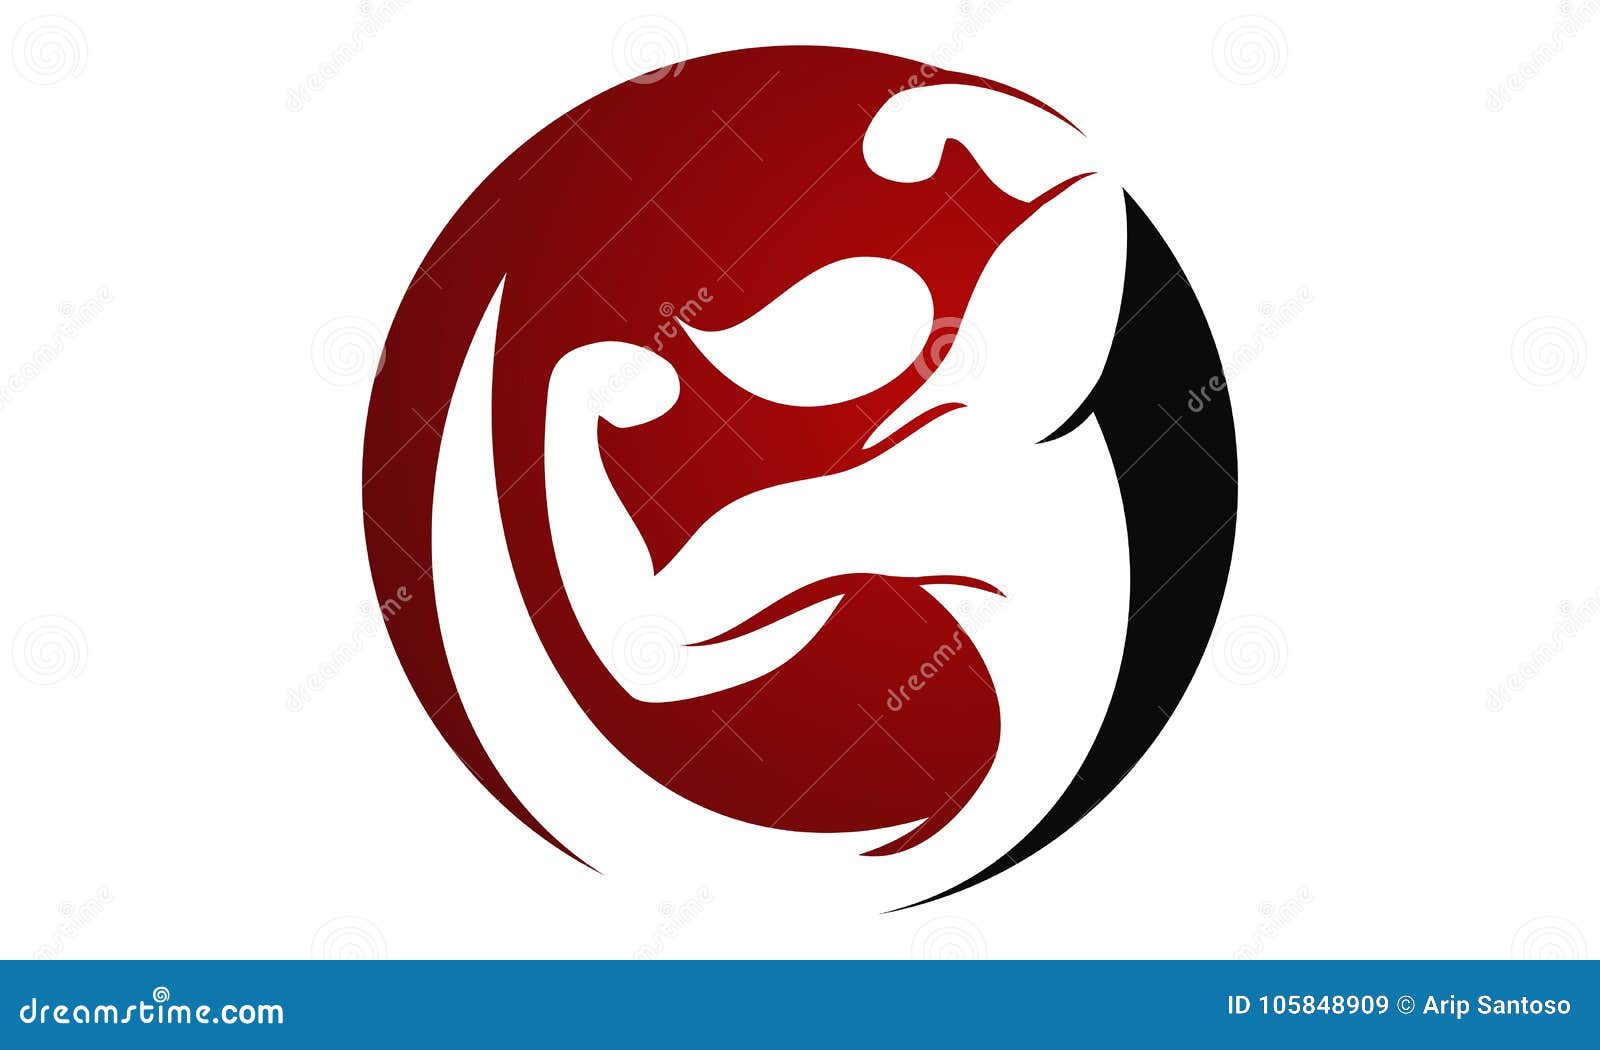 Fitness Center Logo Design Template Stock Vector Illustration Of